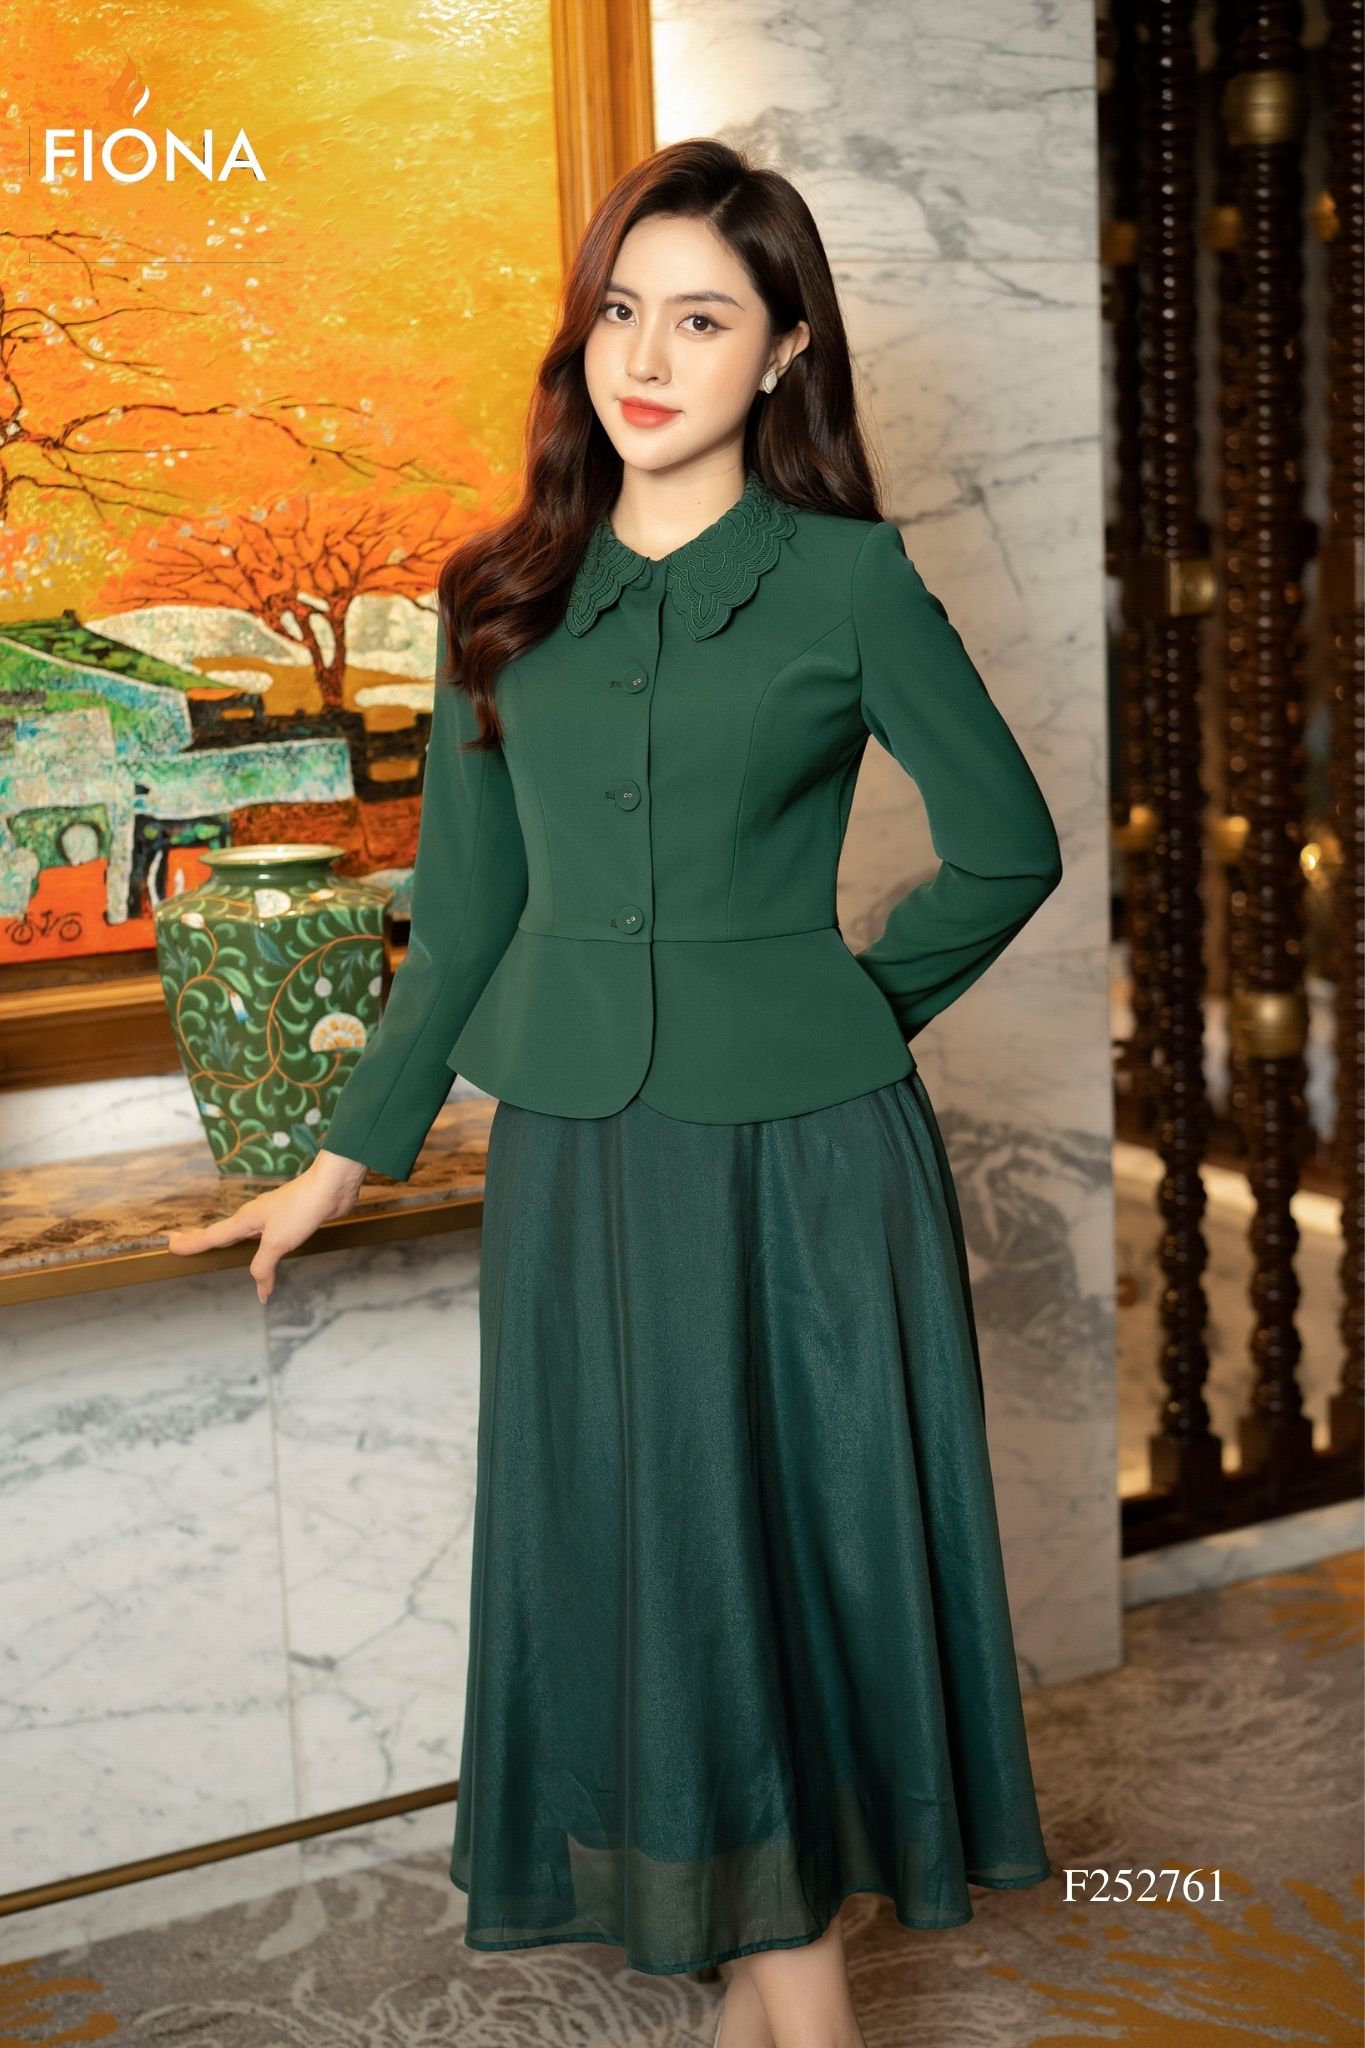 Áo vest nữ dáng suông với chân váy xòe V483 tại Thời Trang Thủy | Fashion,  Dress pattern, Style